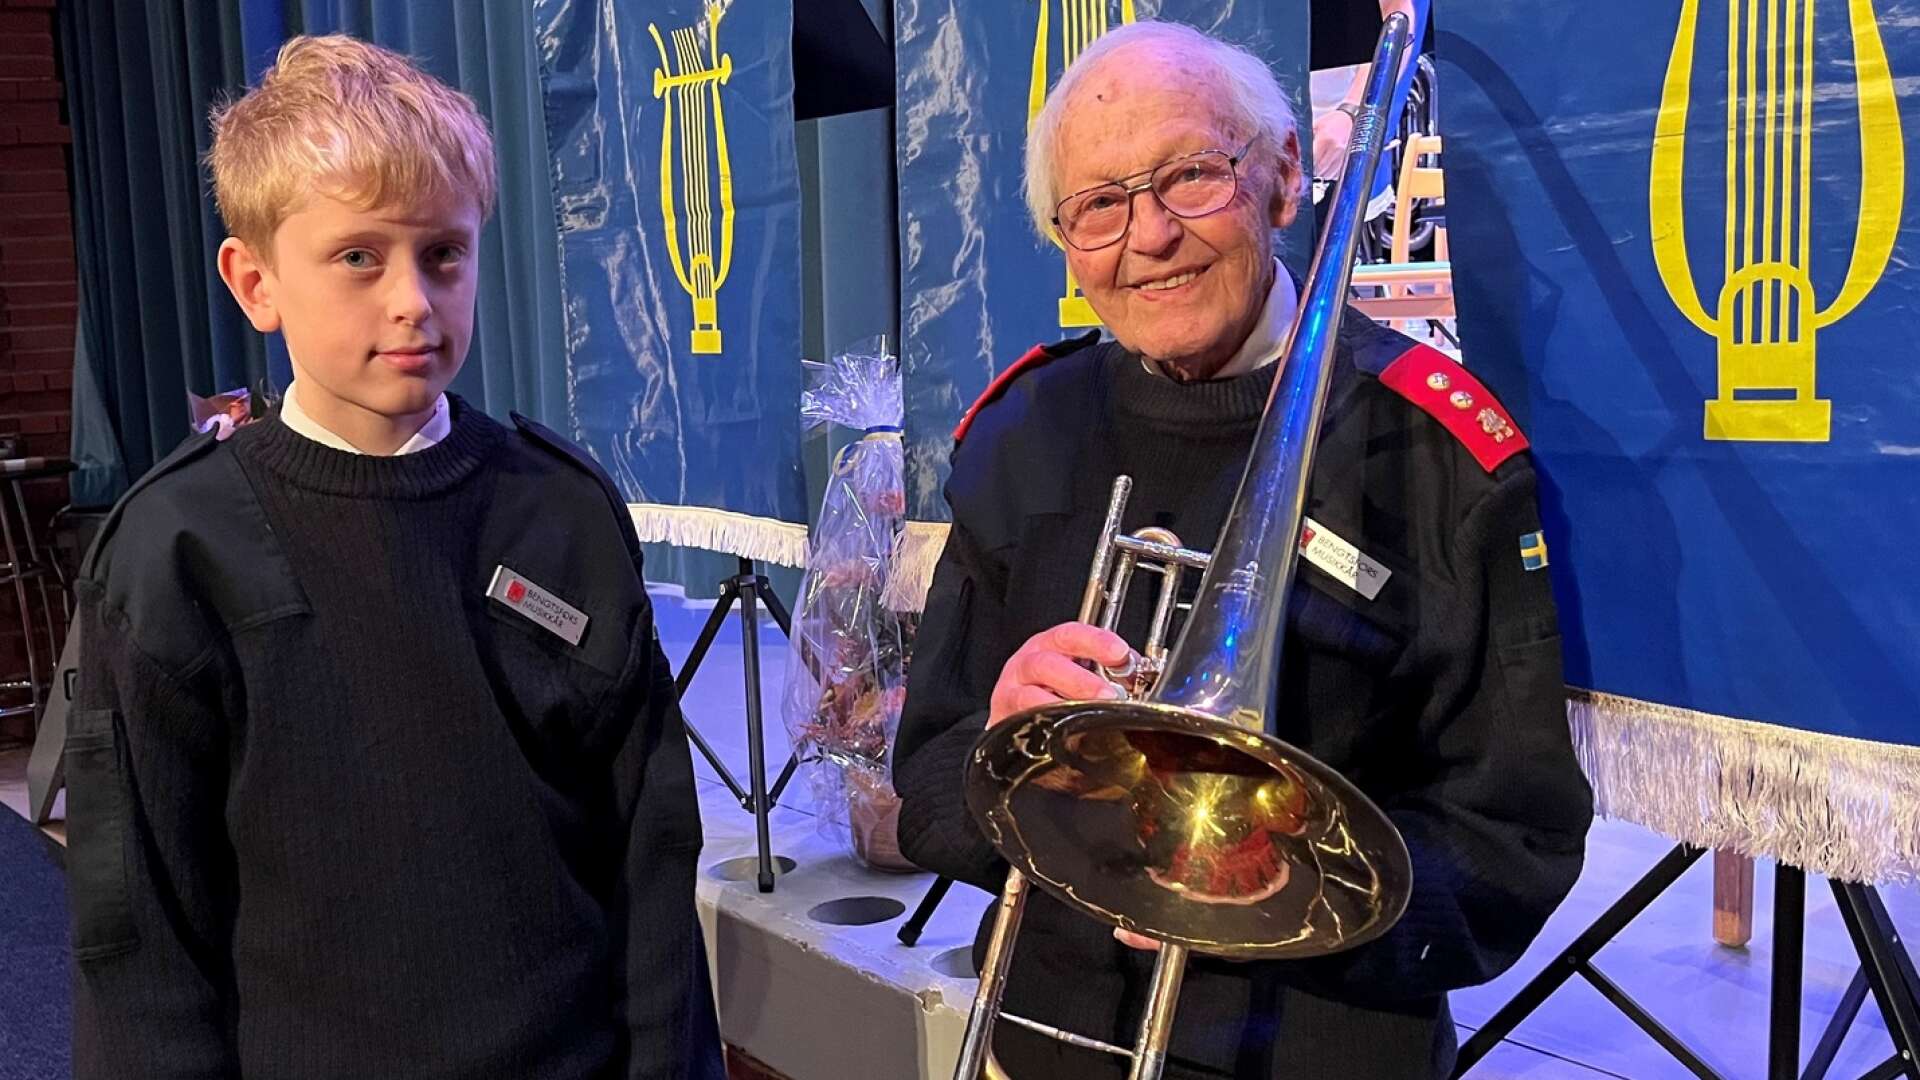 Karl-Erik Röst-Skarpnes spelar trumpet och är yngst i Bengtsfors musikkår. Här står han tillsammans med Rolf Ström, 90 år, som varit aktiv i musikkåren i 75 år. Han spelar bland annat tuba och basun.